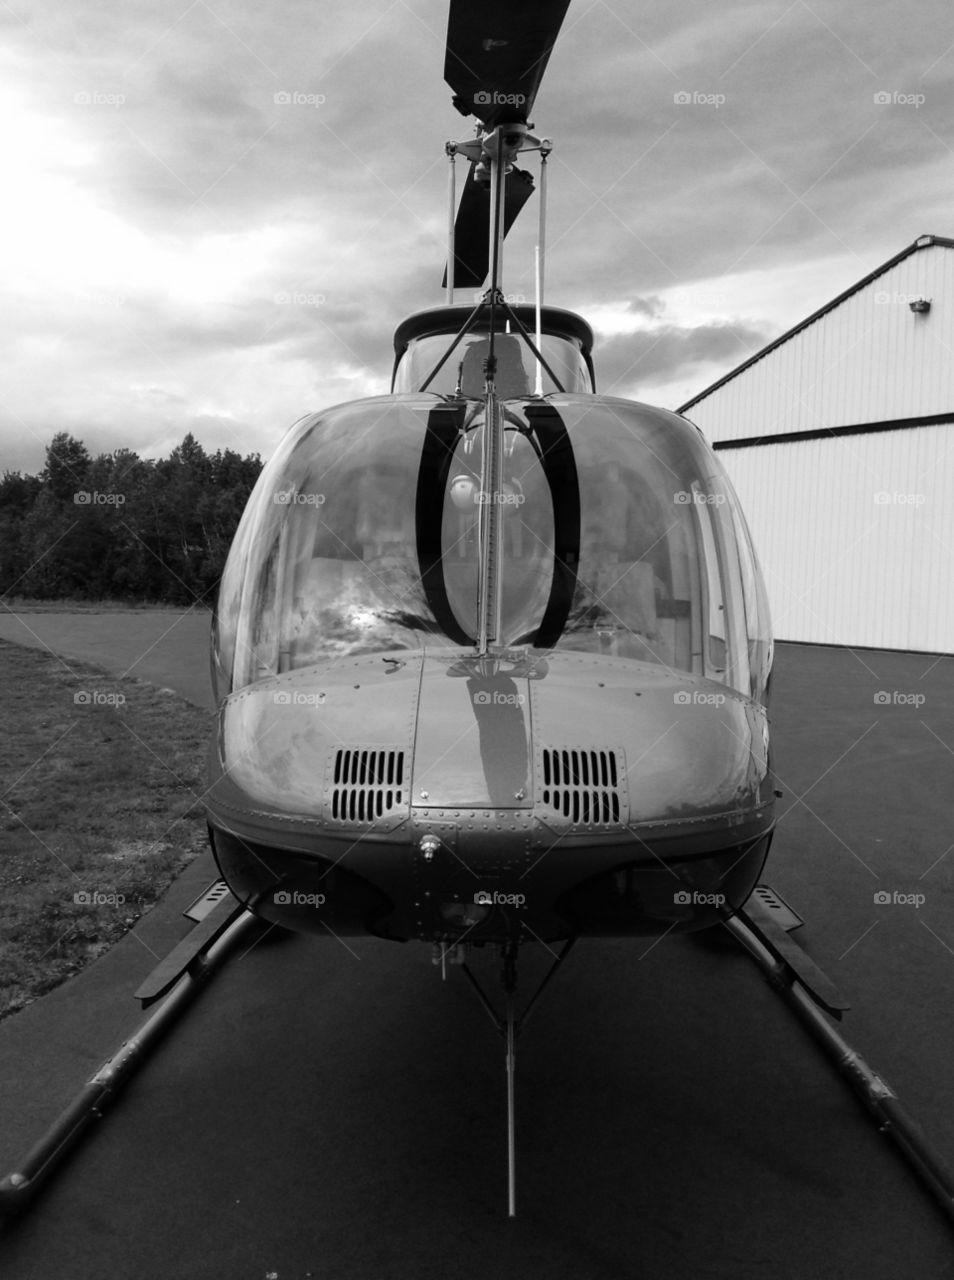 Chopper in Maine